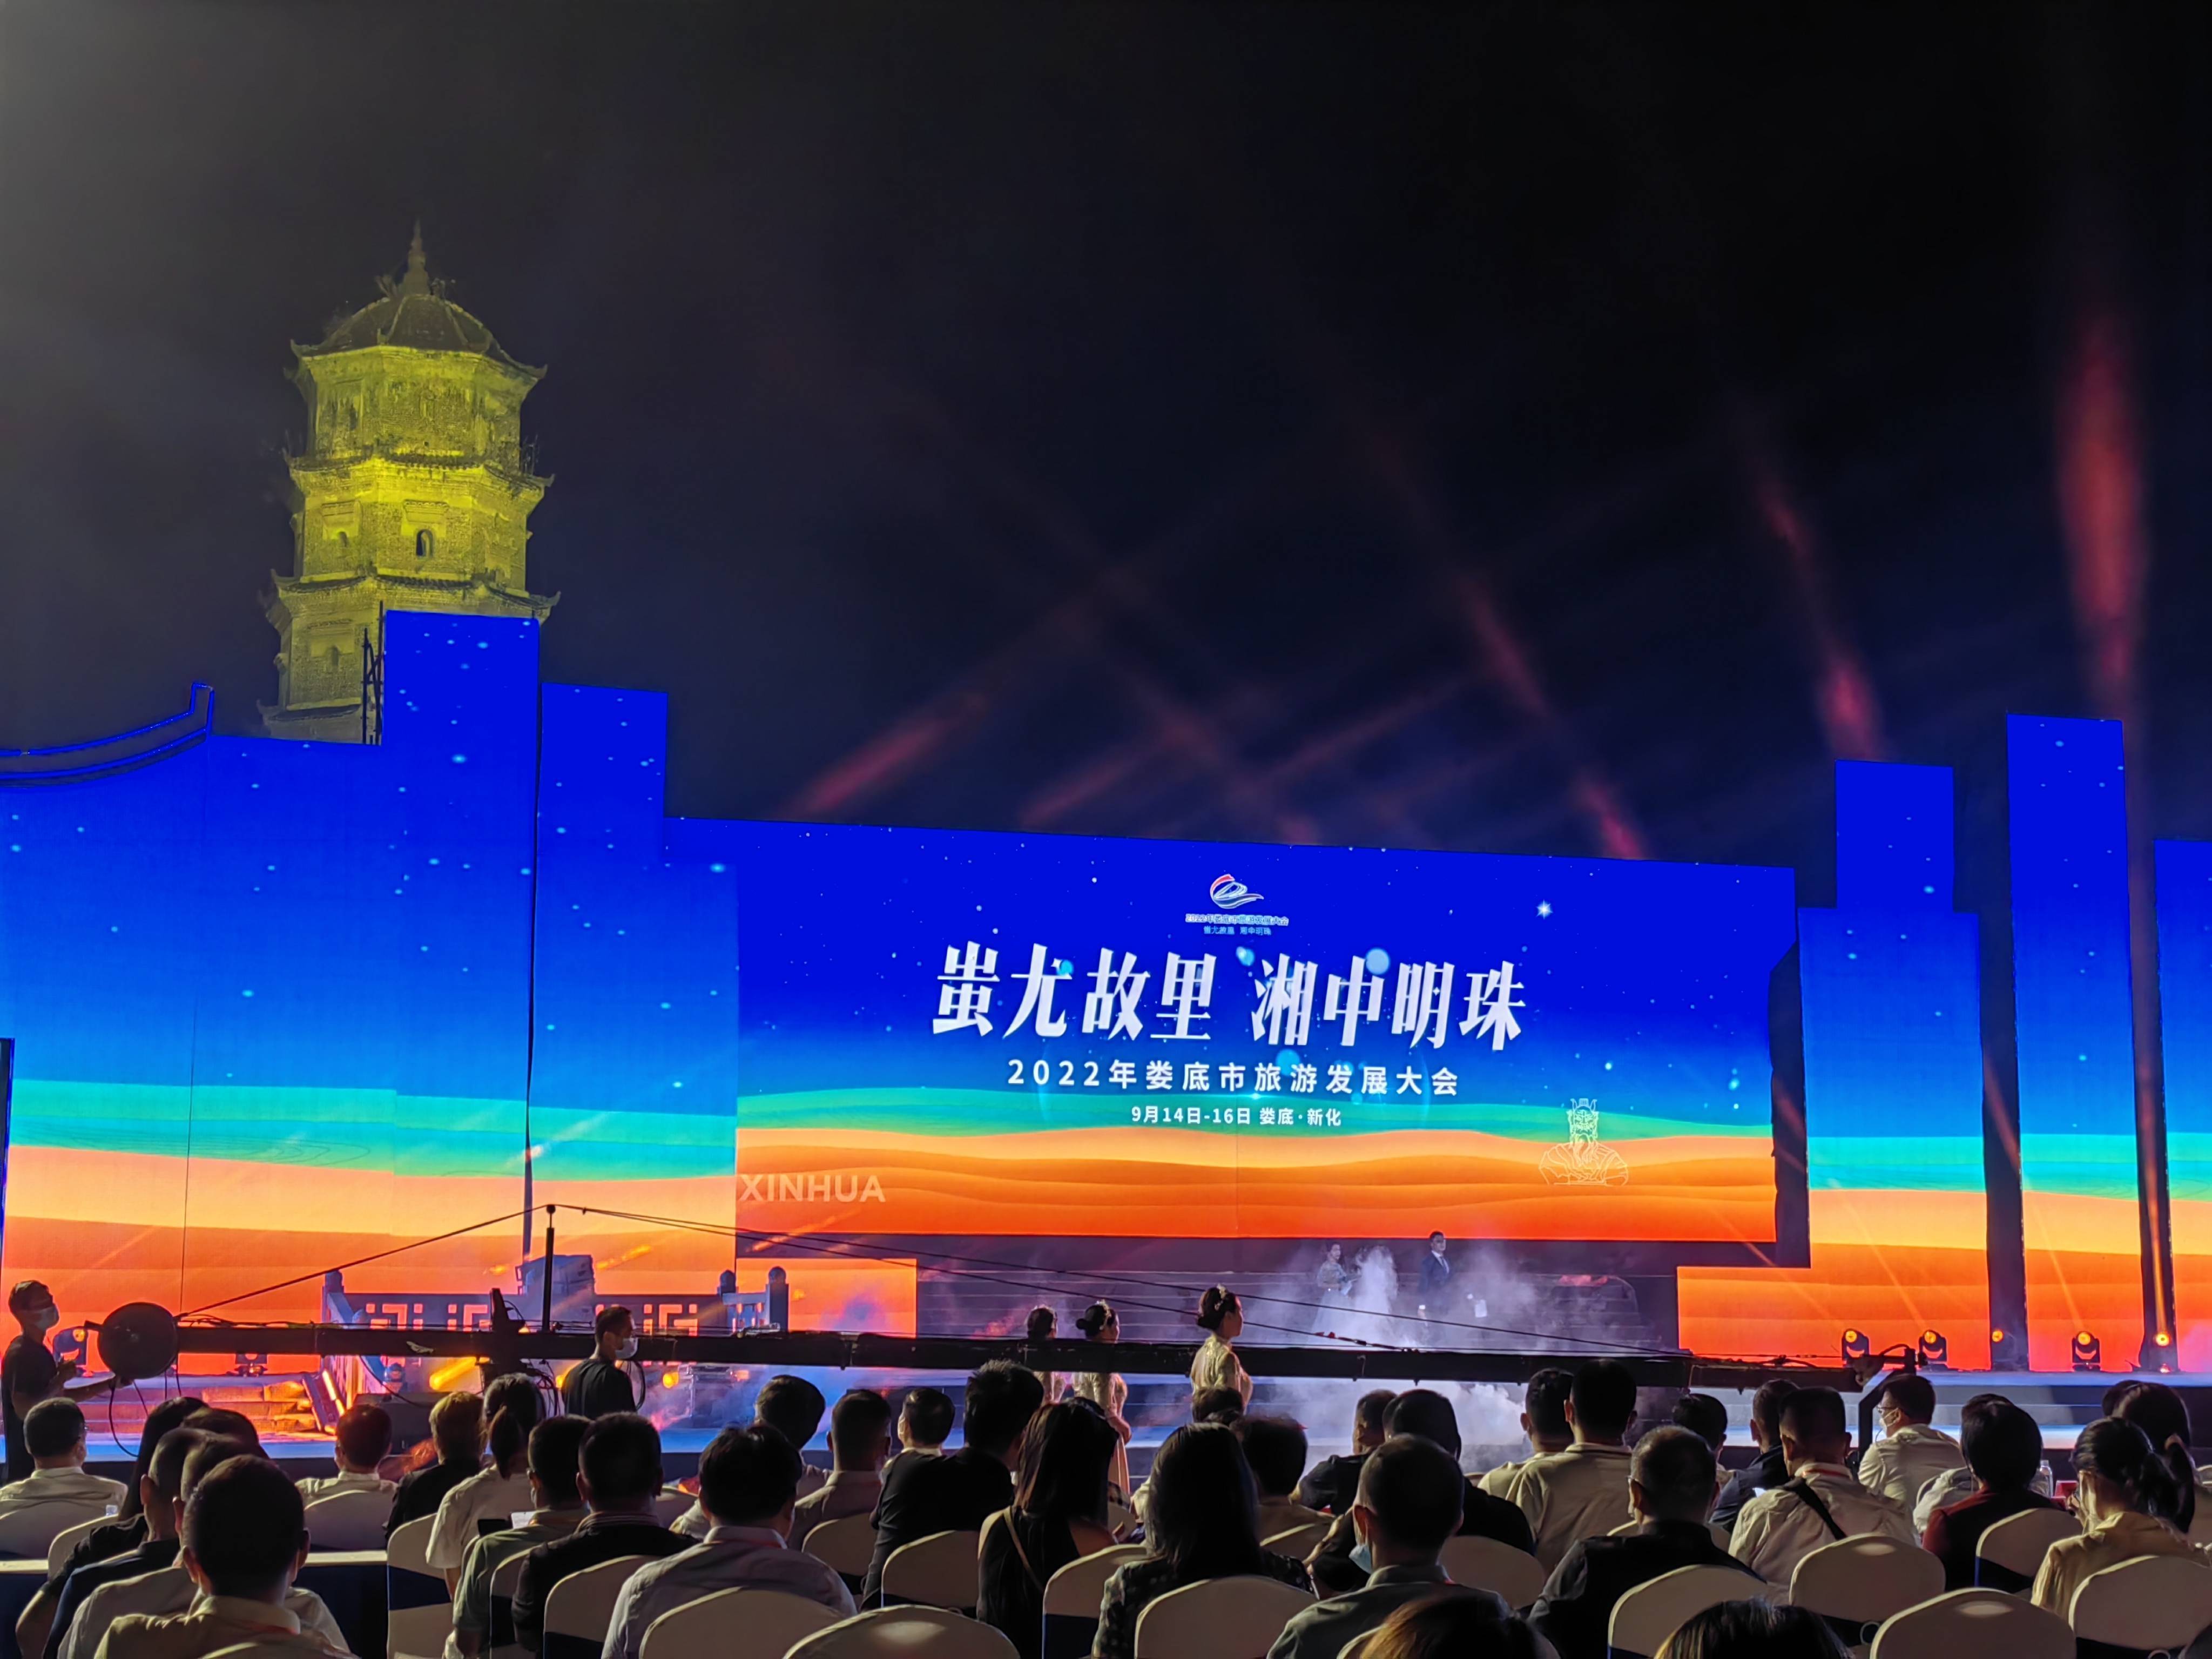 蚩尤故里 湘中明珠 2022年娄底市旅游发展大会开幕